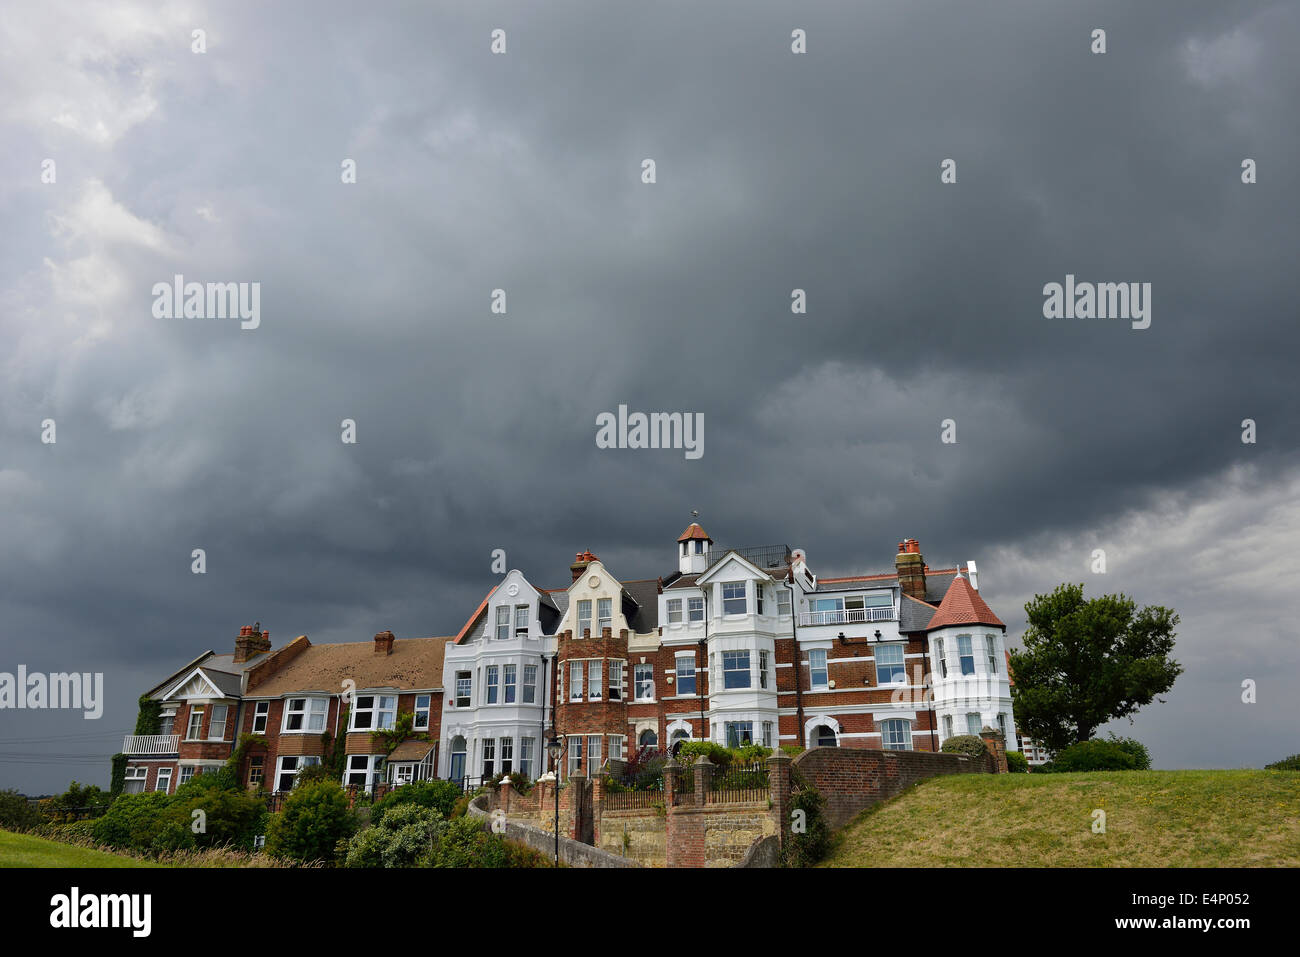 Gewitterwolken über eine Reihe von Wohnhäusern Stockfoto